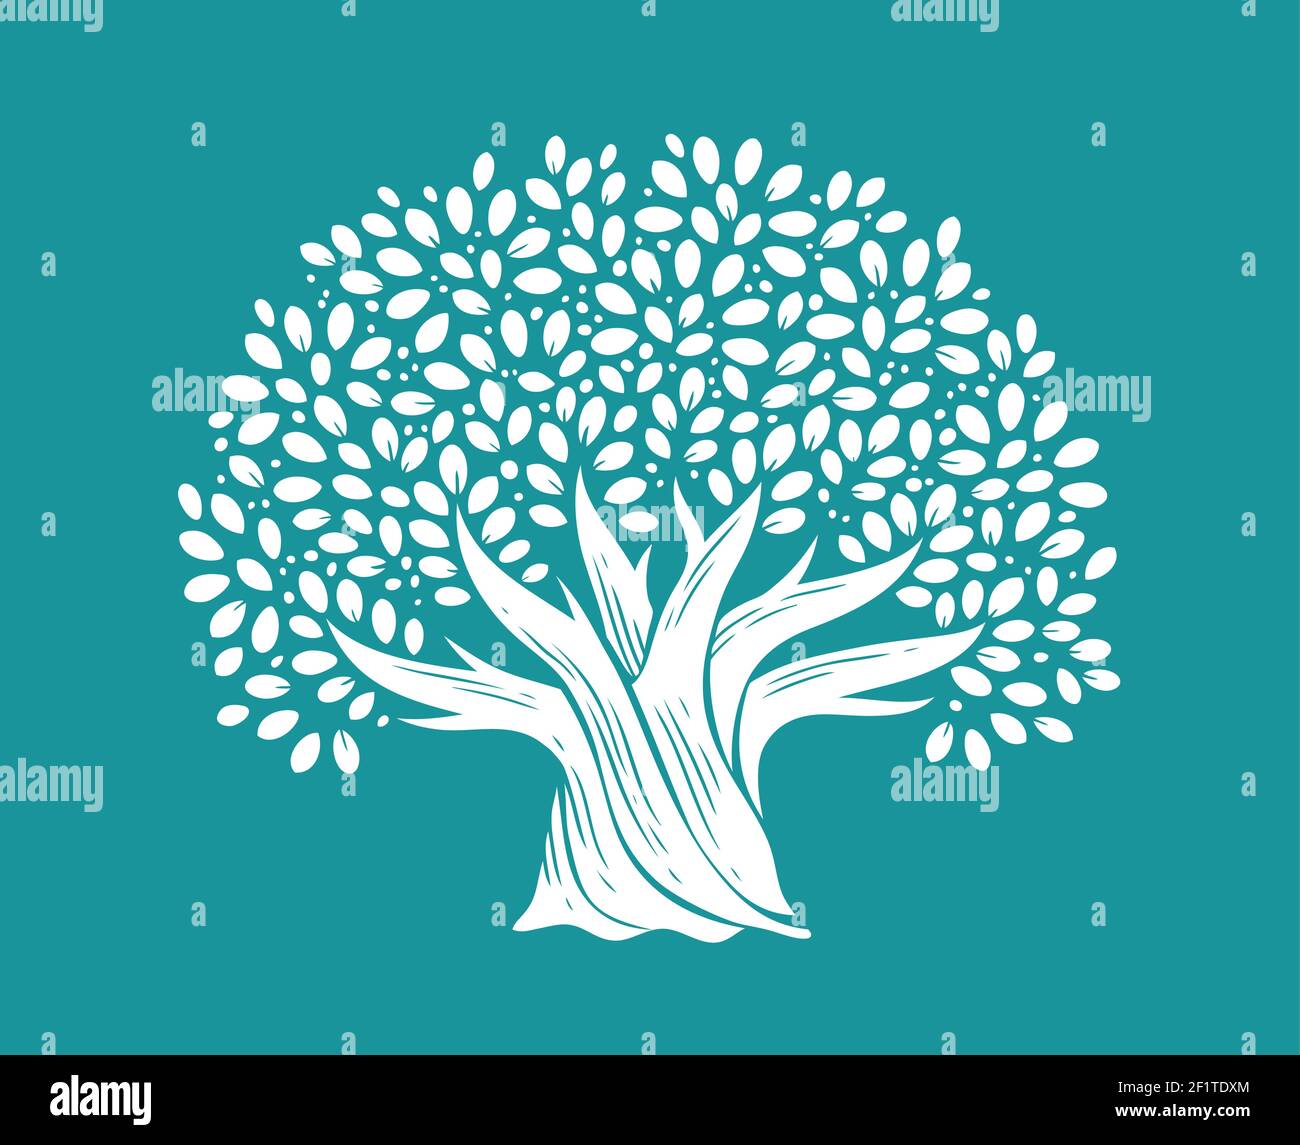 Árbol con hojas en estilo decorativo. Ilustración vectorial del concepto de la naturaleza Ilustración del Vector